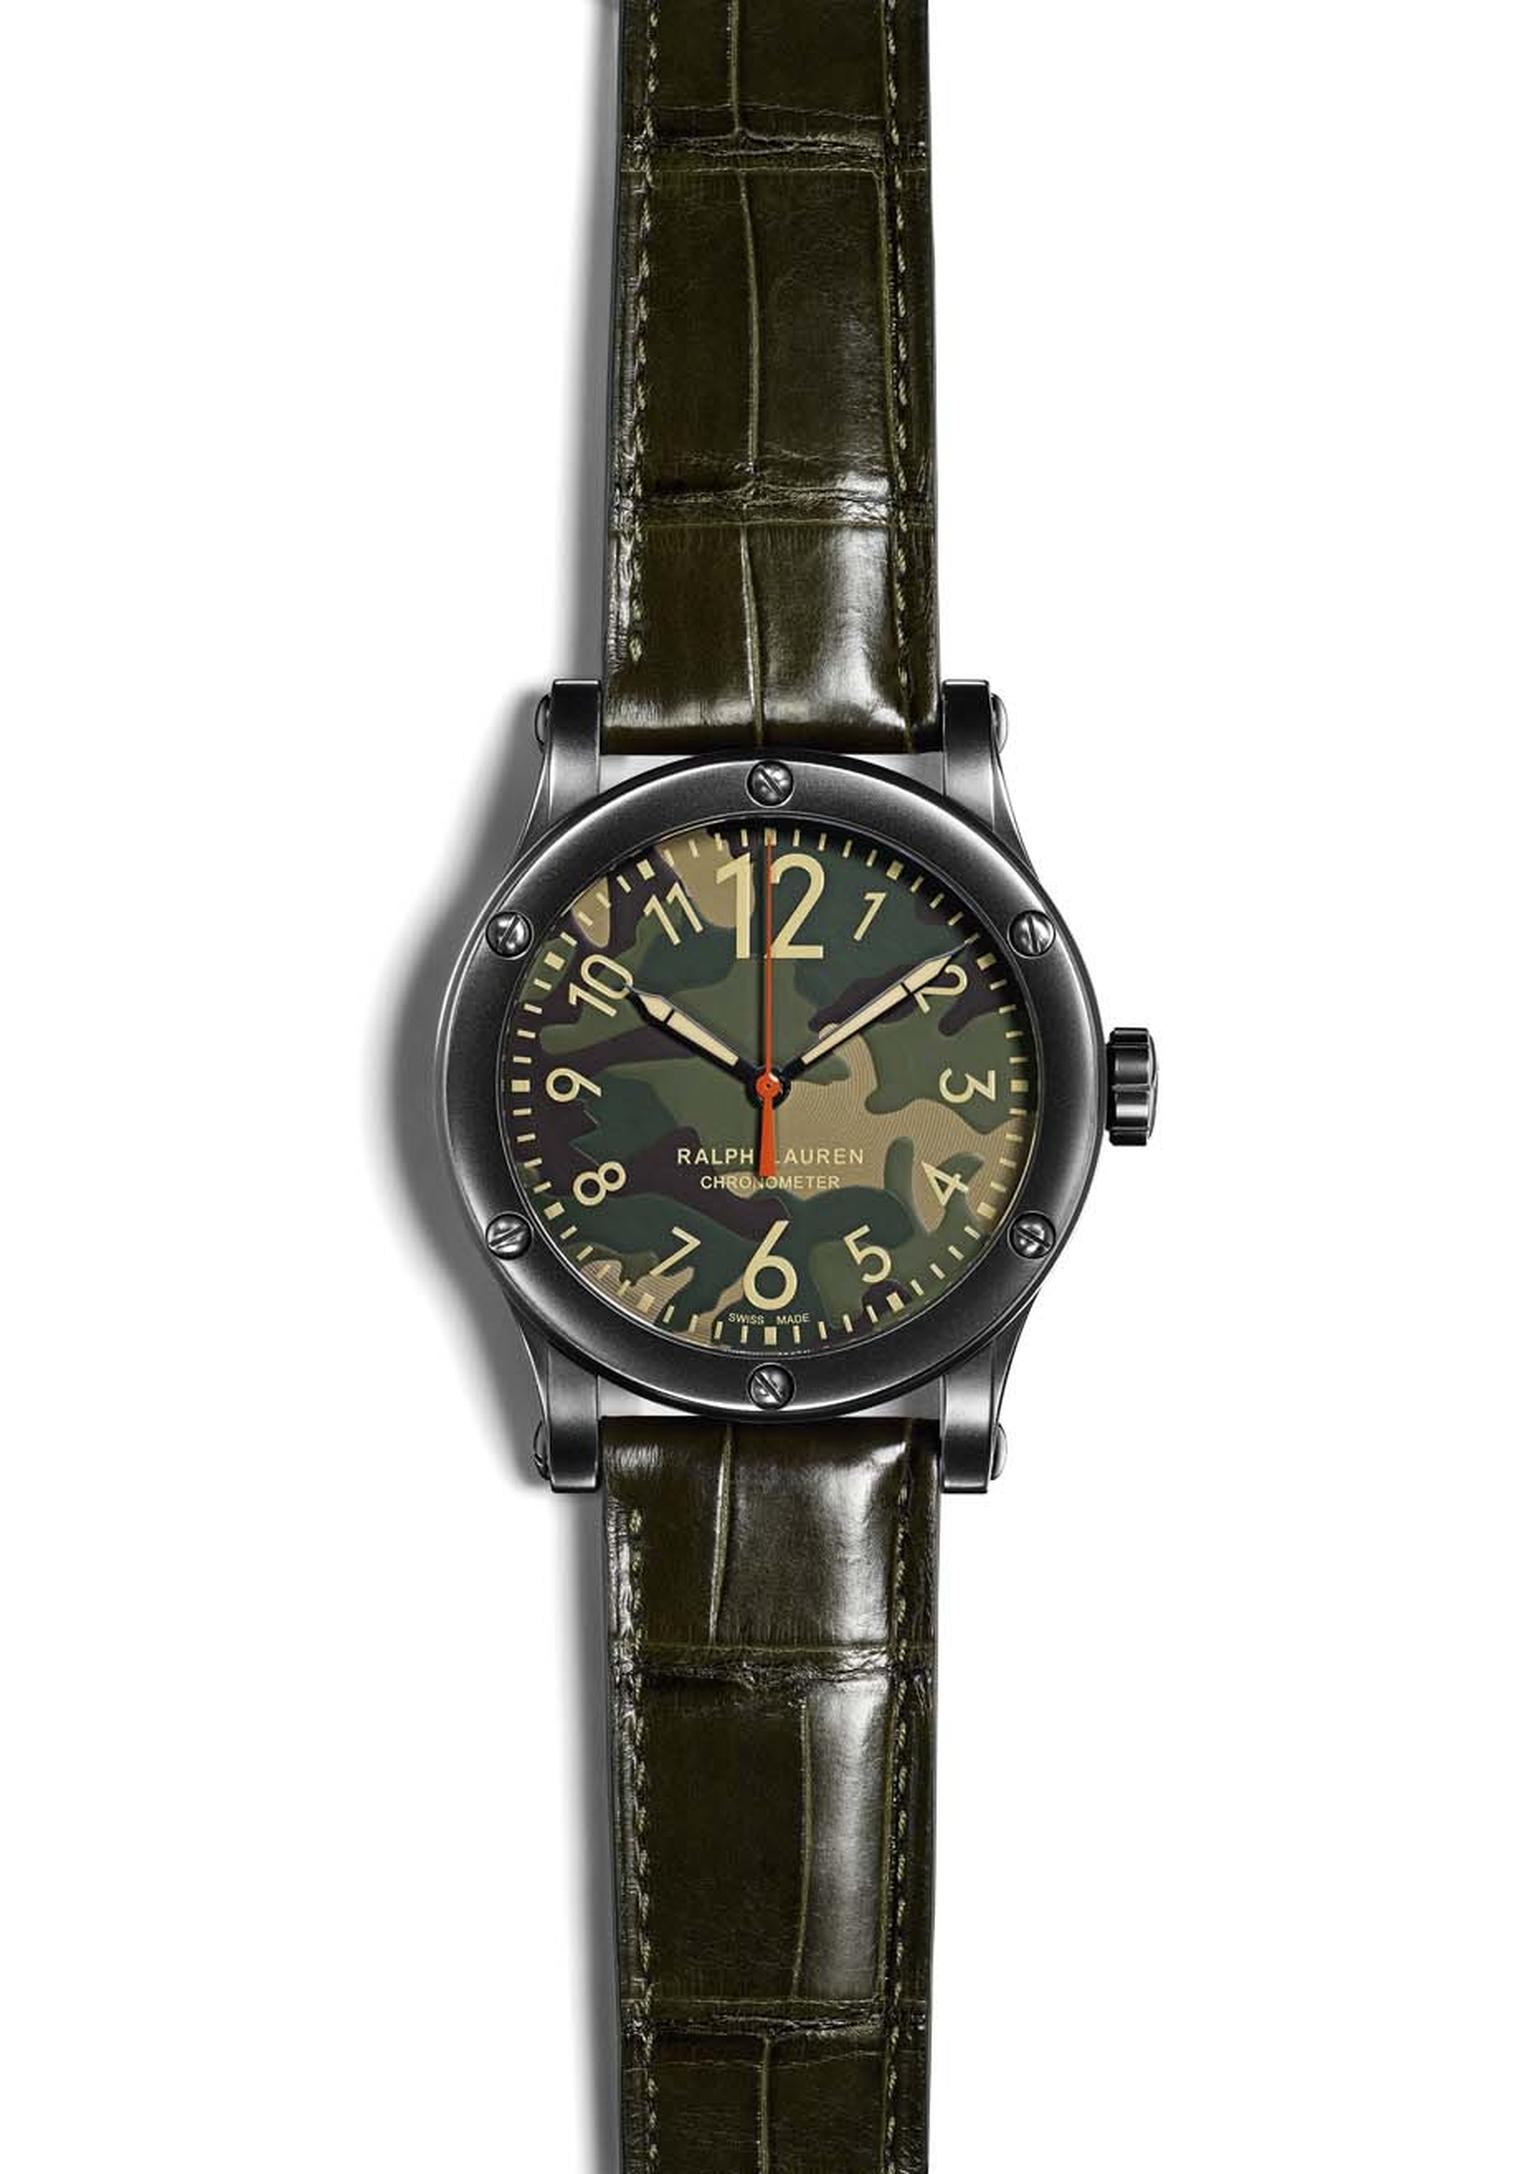 Ralph Lauren_Safari watches_Safari Camo watch.jpg